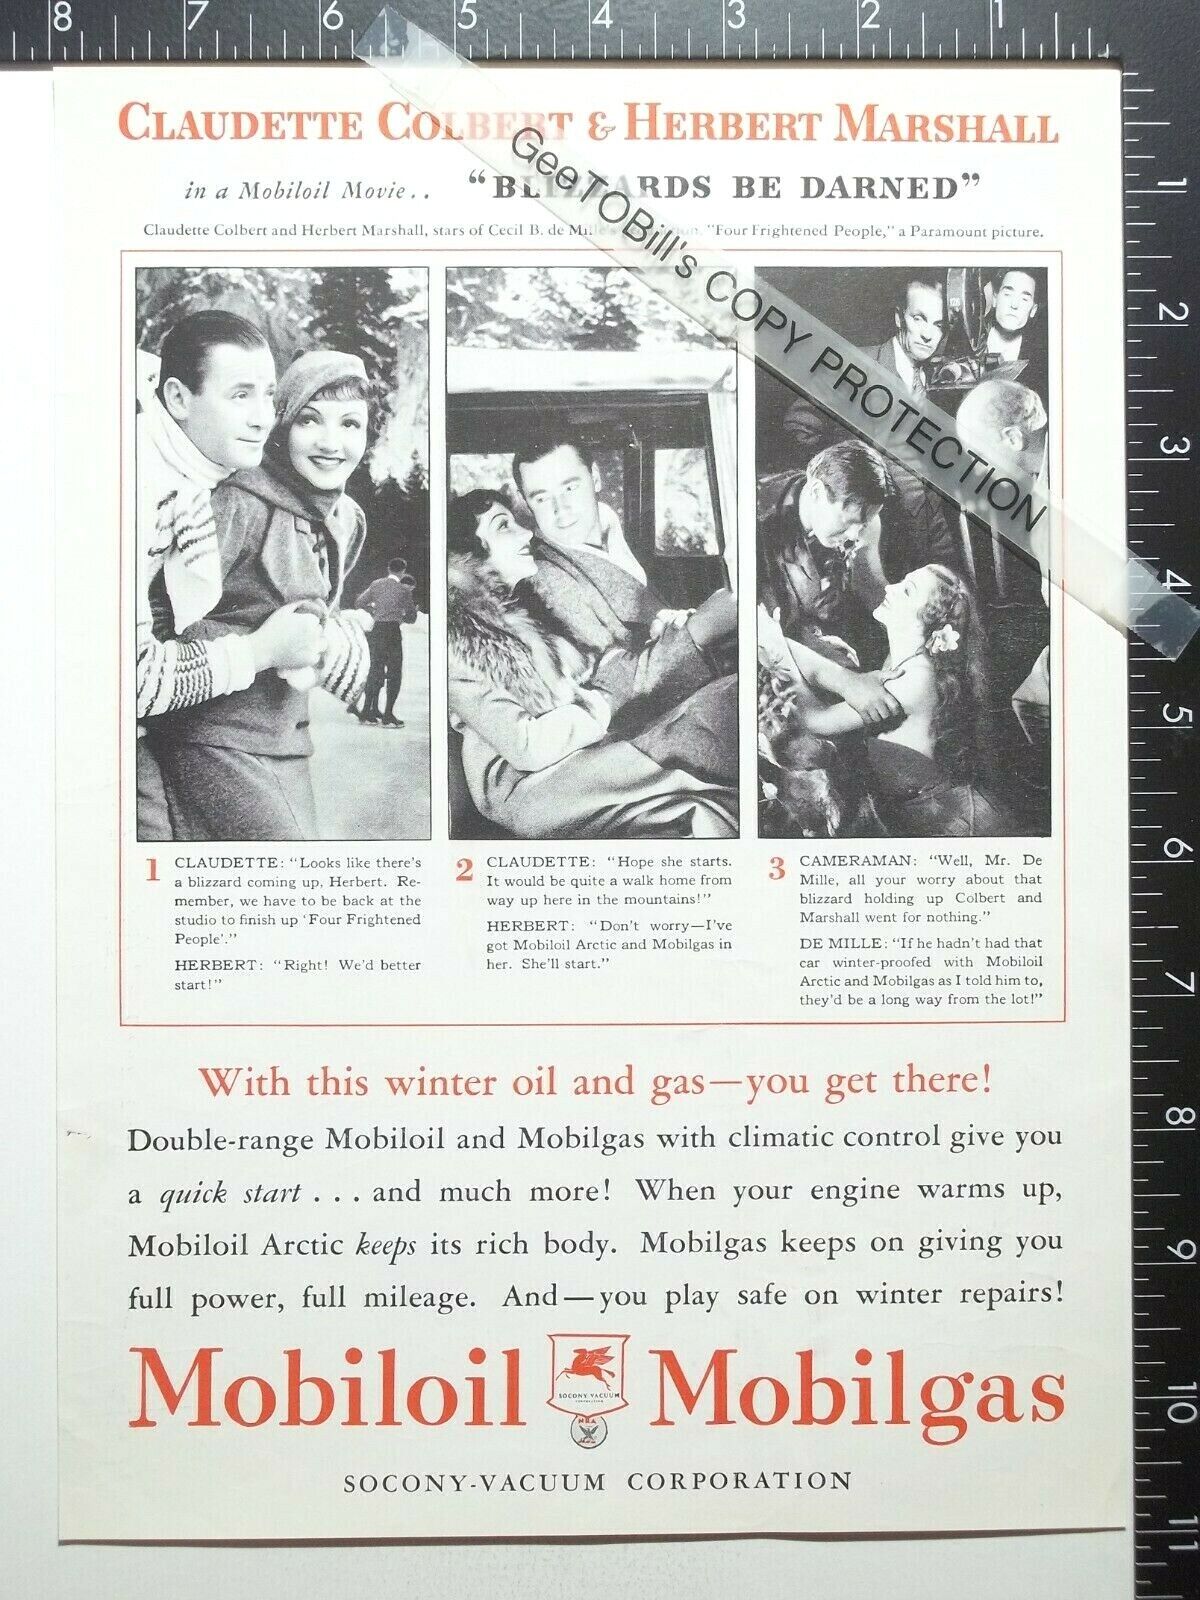 1934 AD Mobiloil Mobilgas Claudette Colbert Herbert Marshall 4 Frightened People